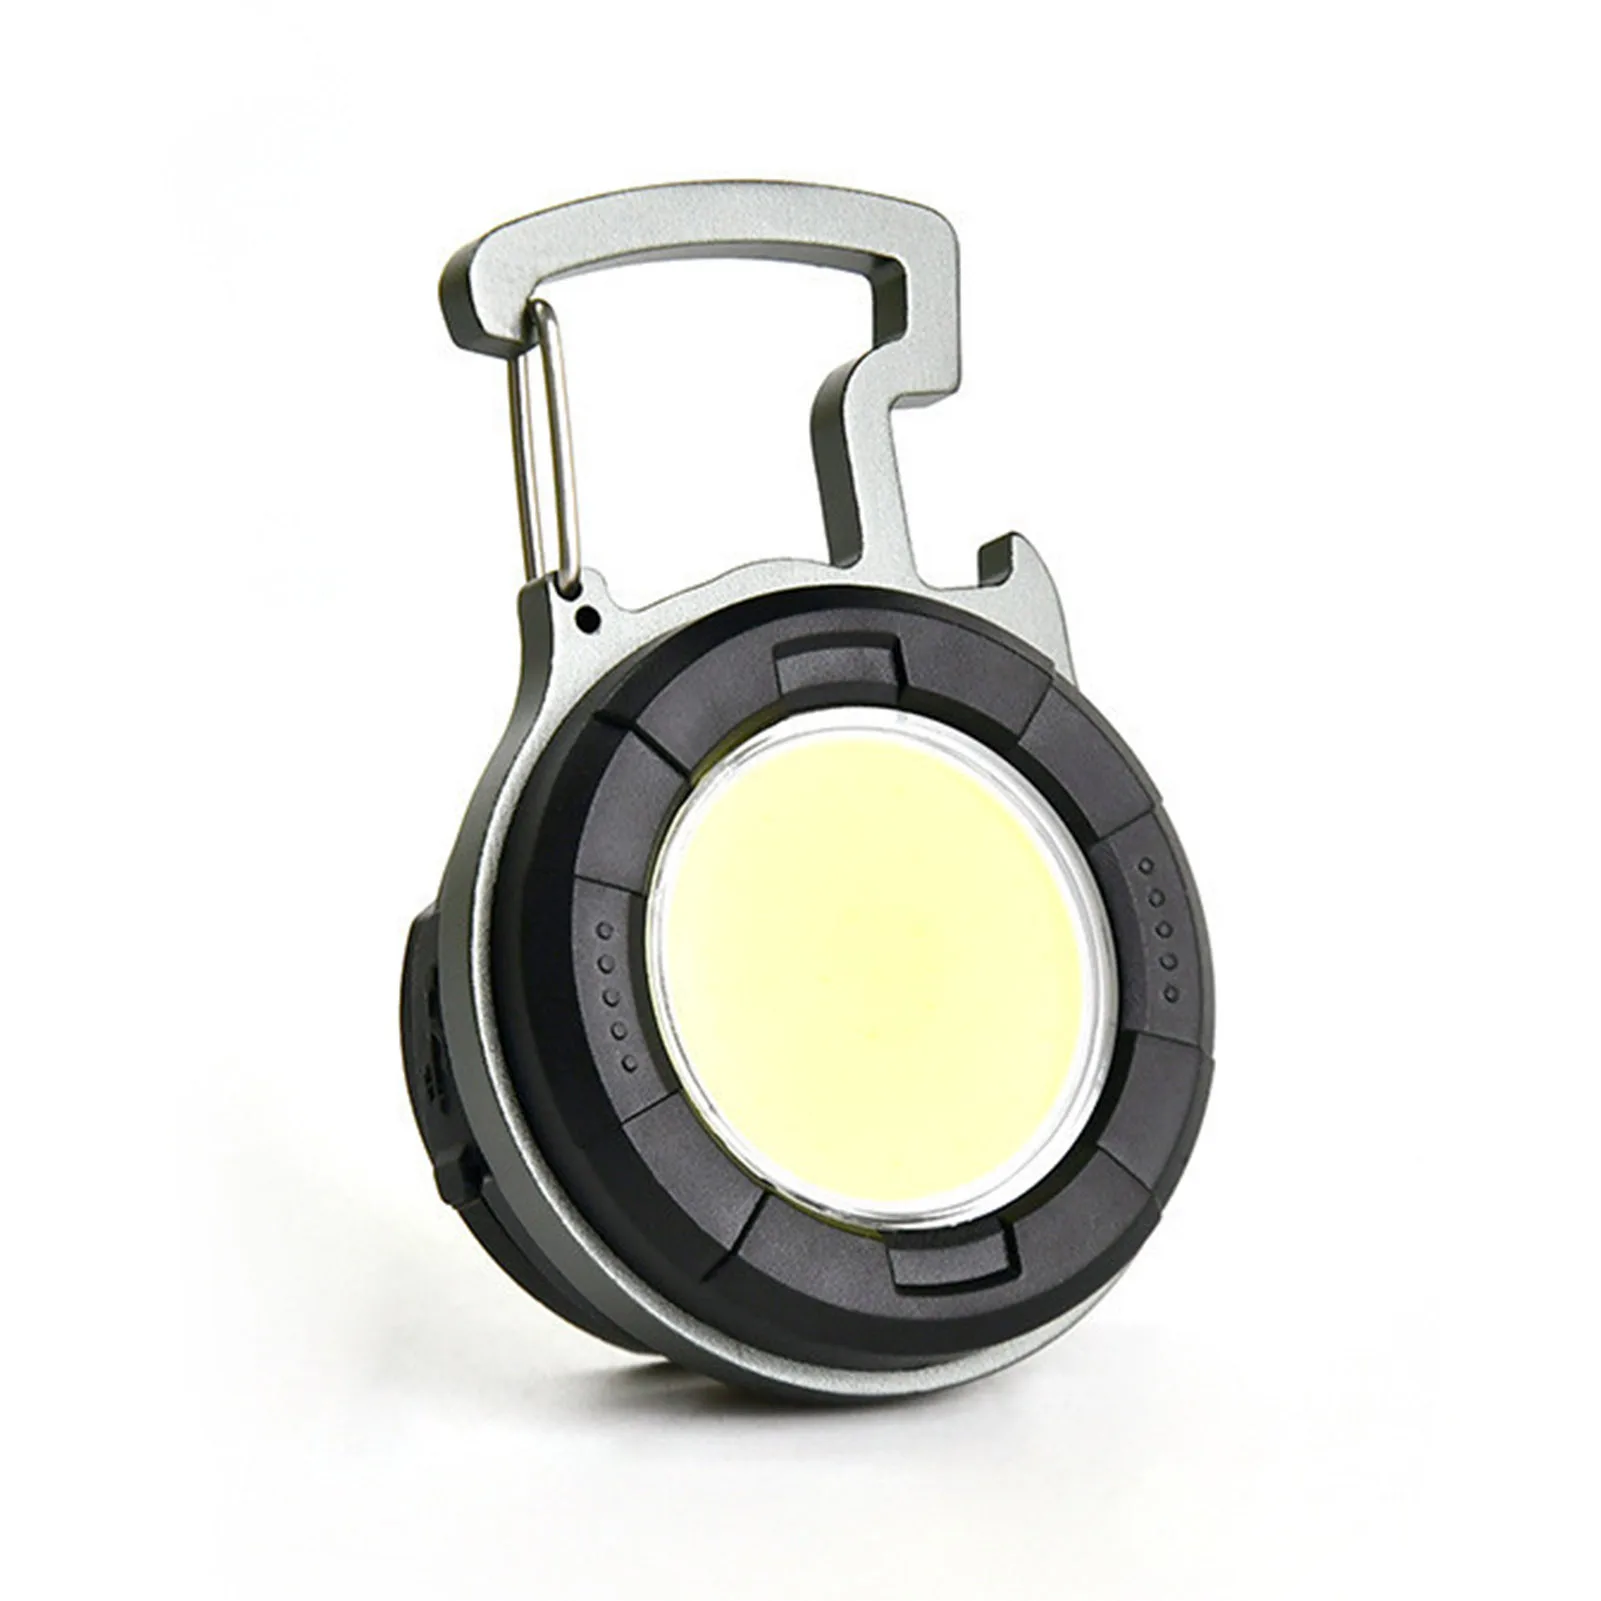 

СВЕТОДИОДНЫЙ брелок Светильник заряжаемый фонасветильник, 4 режима света, кармансветильник фонарь с USB-кабелем, перезаряжаемый светодиодны...